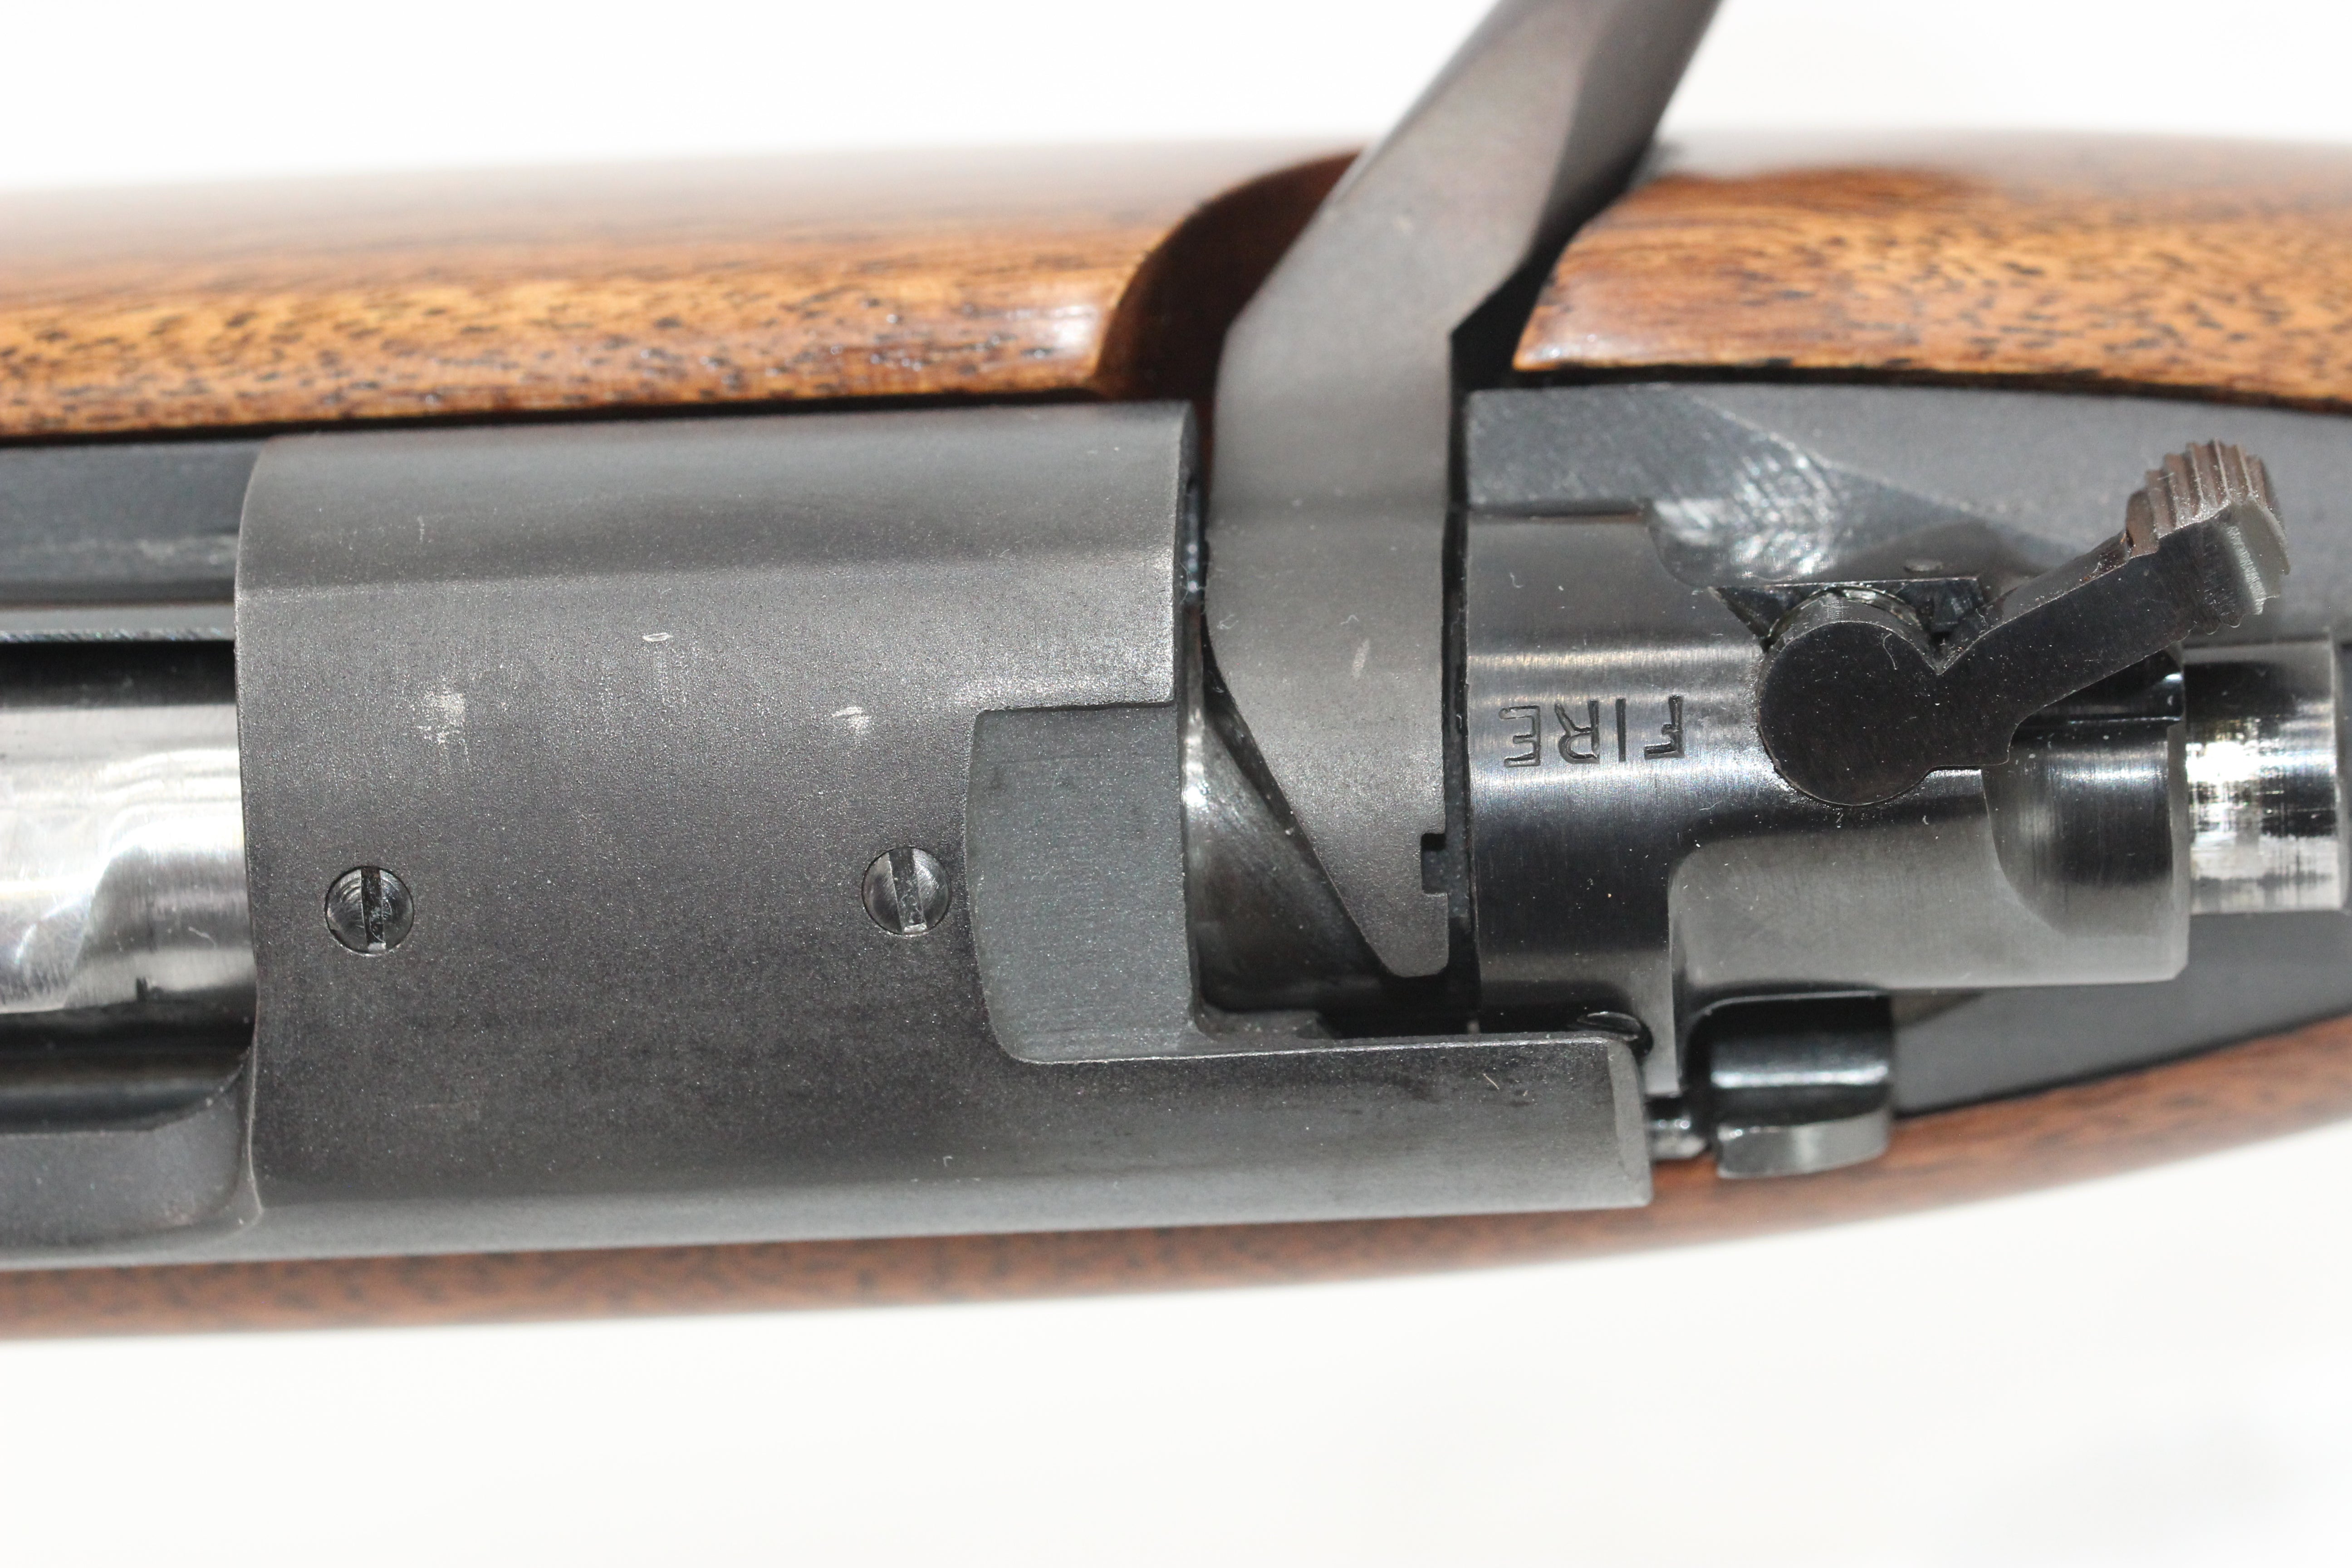 .30-06 Super Grade Rifle - 1957